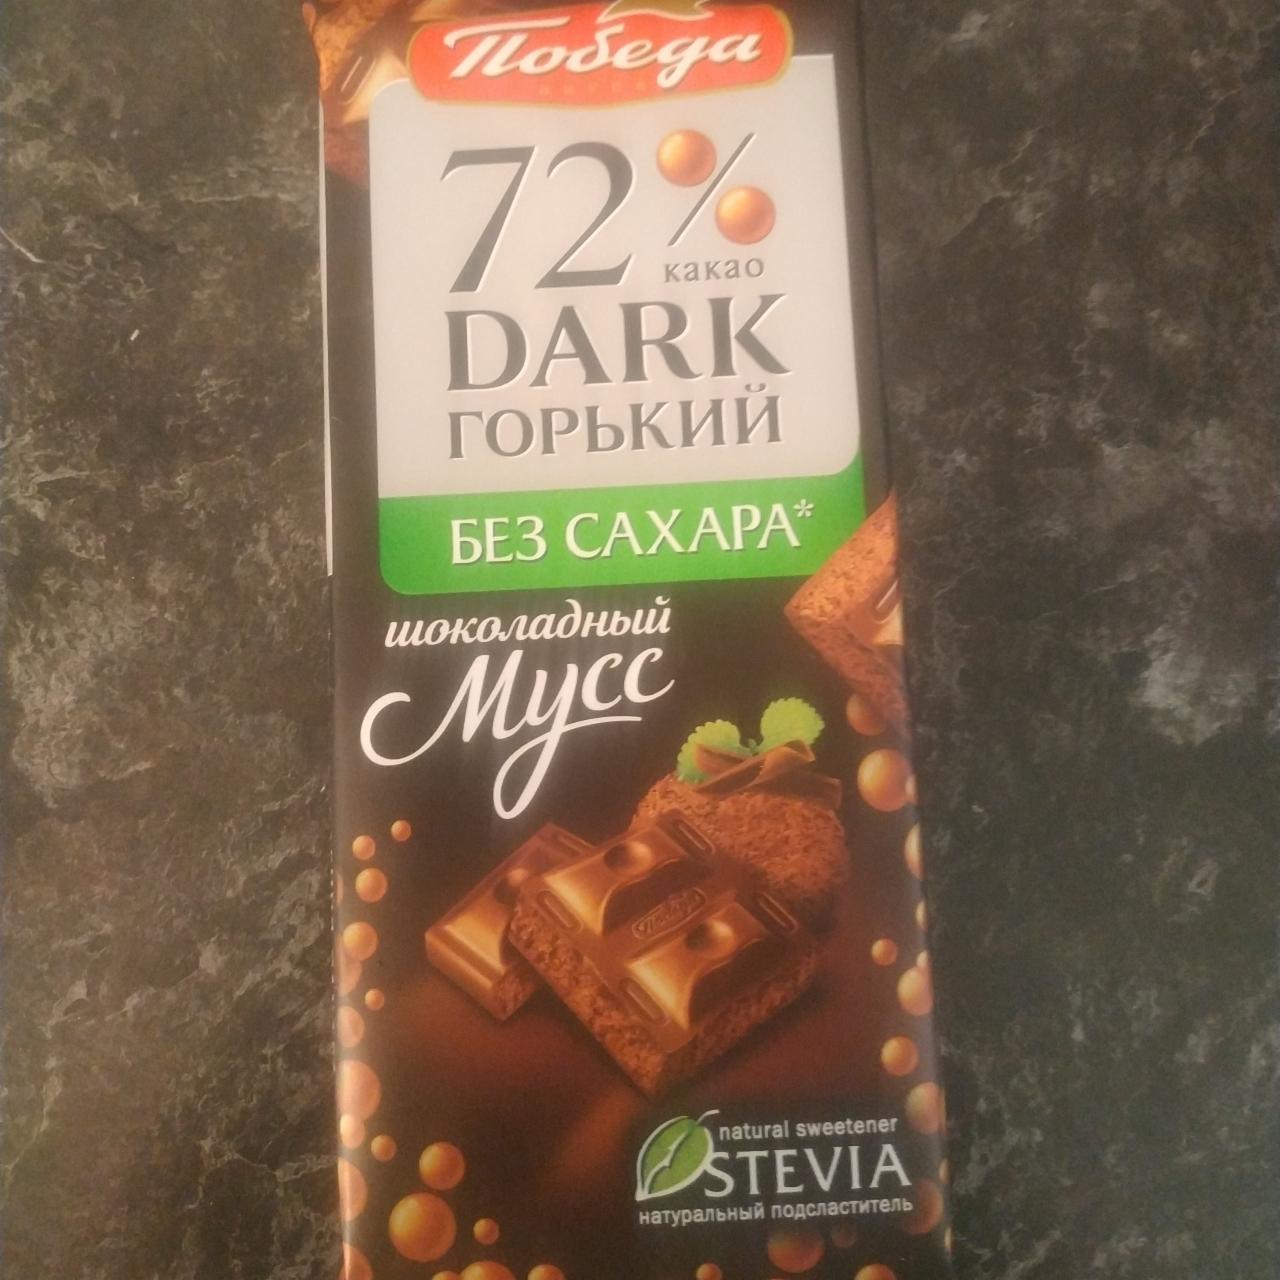 Фото - Шоколад горький Шоколадный мусс 72% Победа вкуса стевия